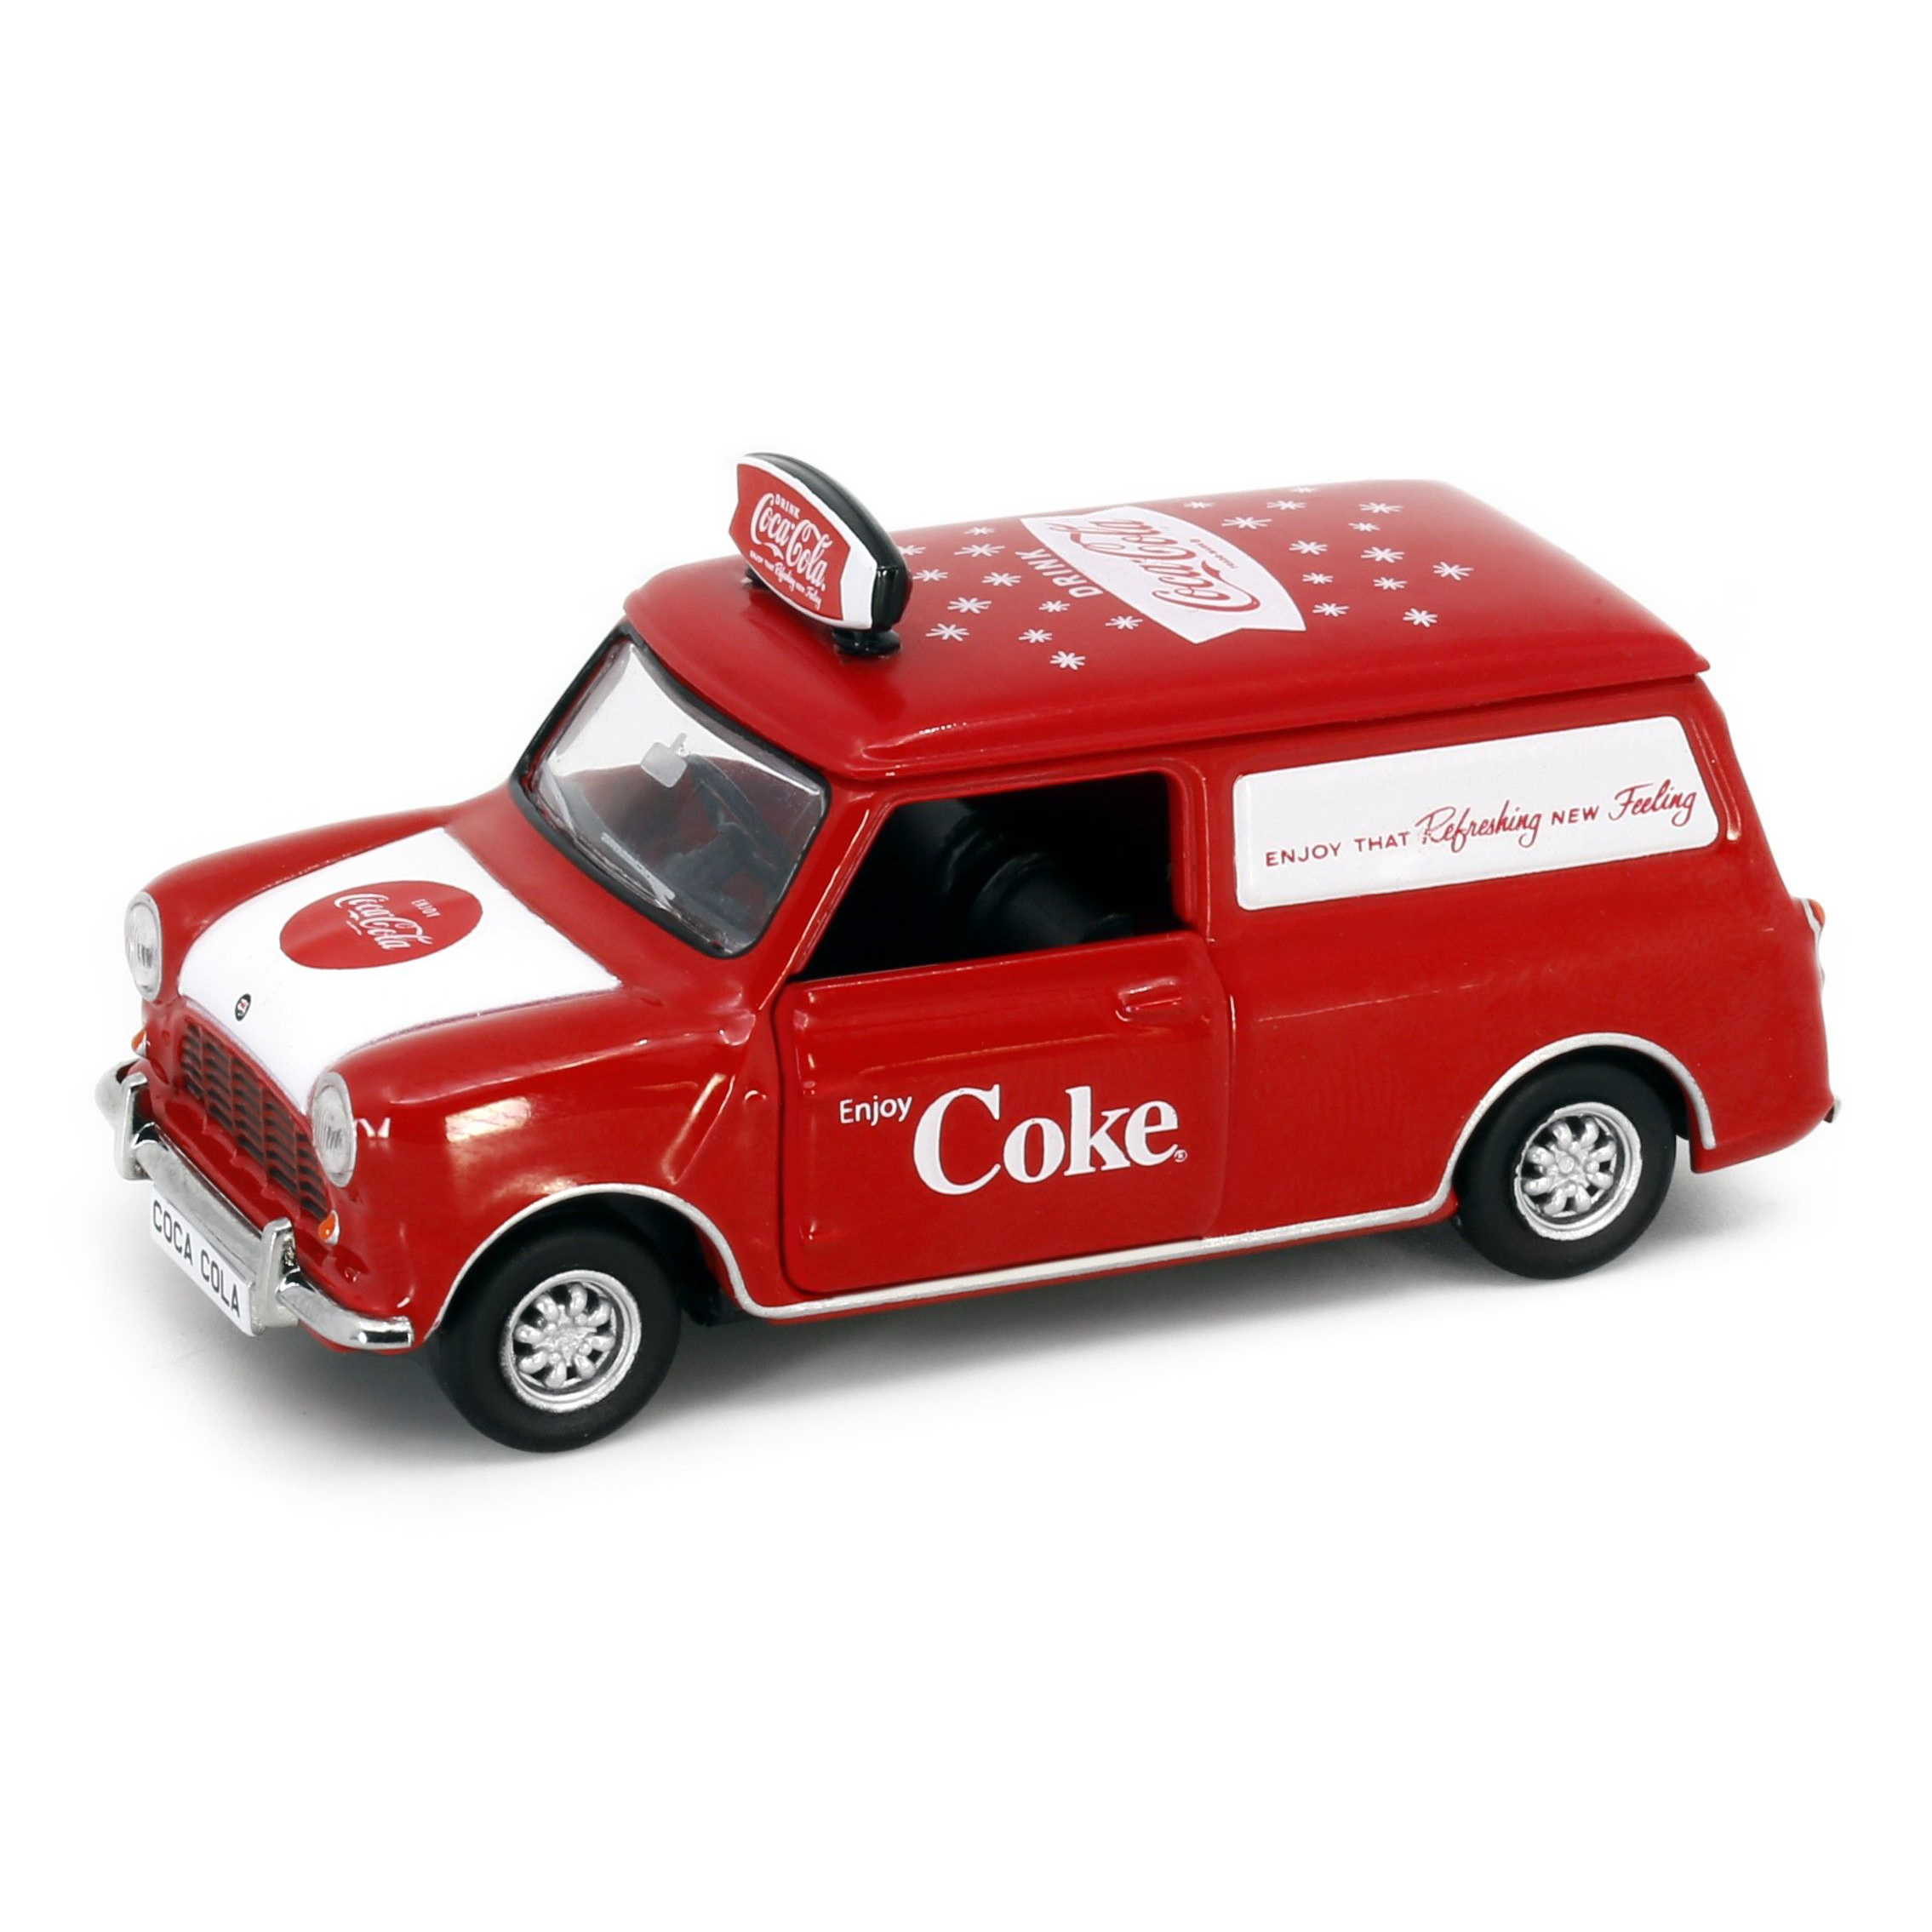 TINY微影 城市 Morris Mini 可口可乐 1/50合金汽车模型收藏摆件